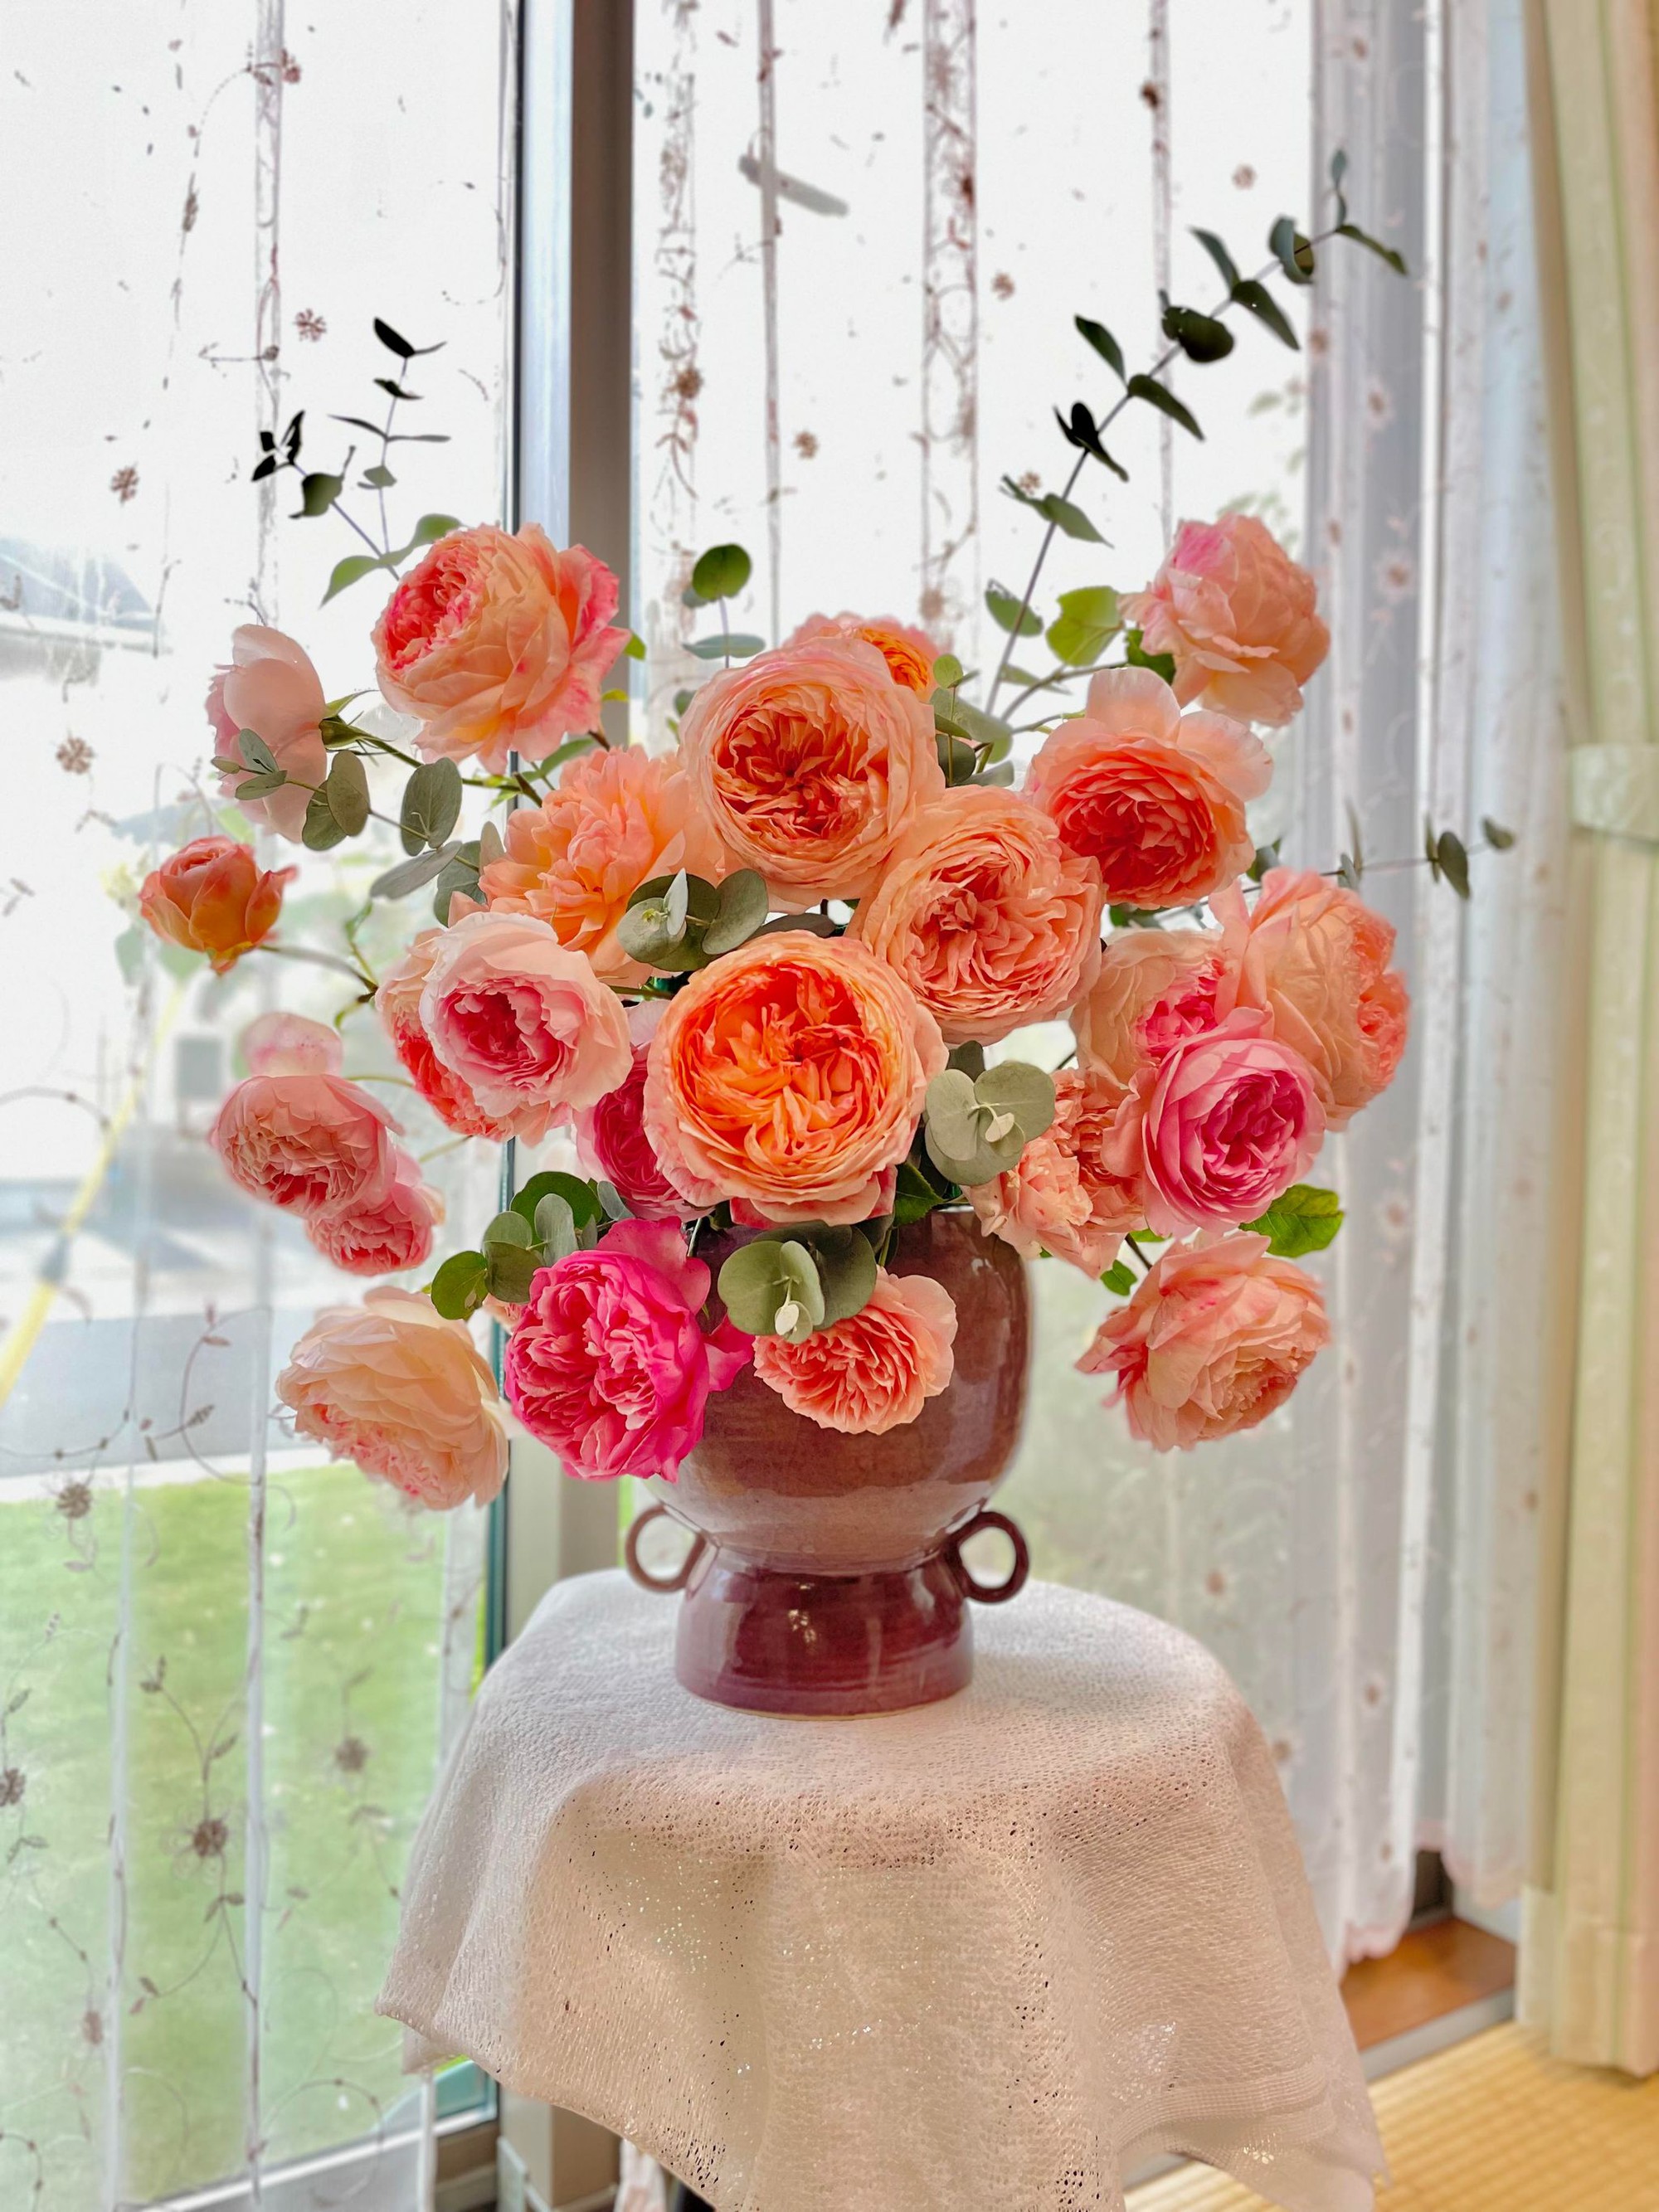 Ngôi nhà lúc nào cũng thơm nức mùi hoa vì có vườn hồng hơn 80 loại của mẹ Việt ở Nhật- Ảnh 27.